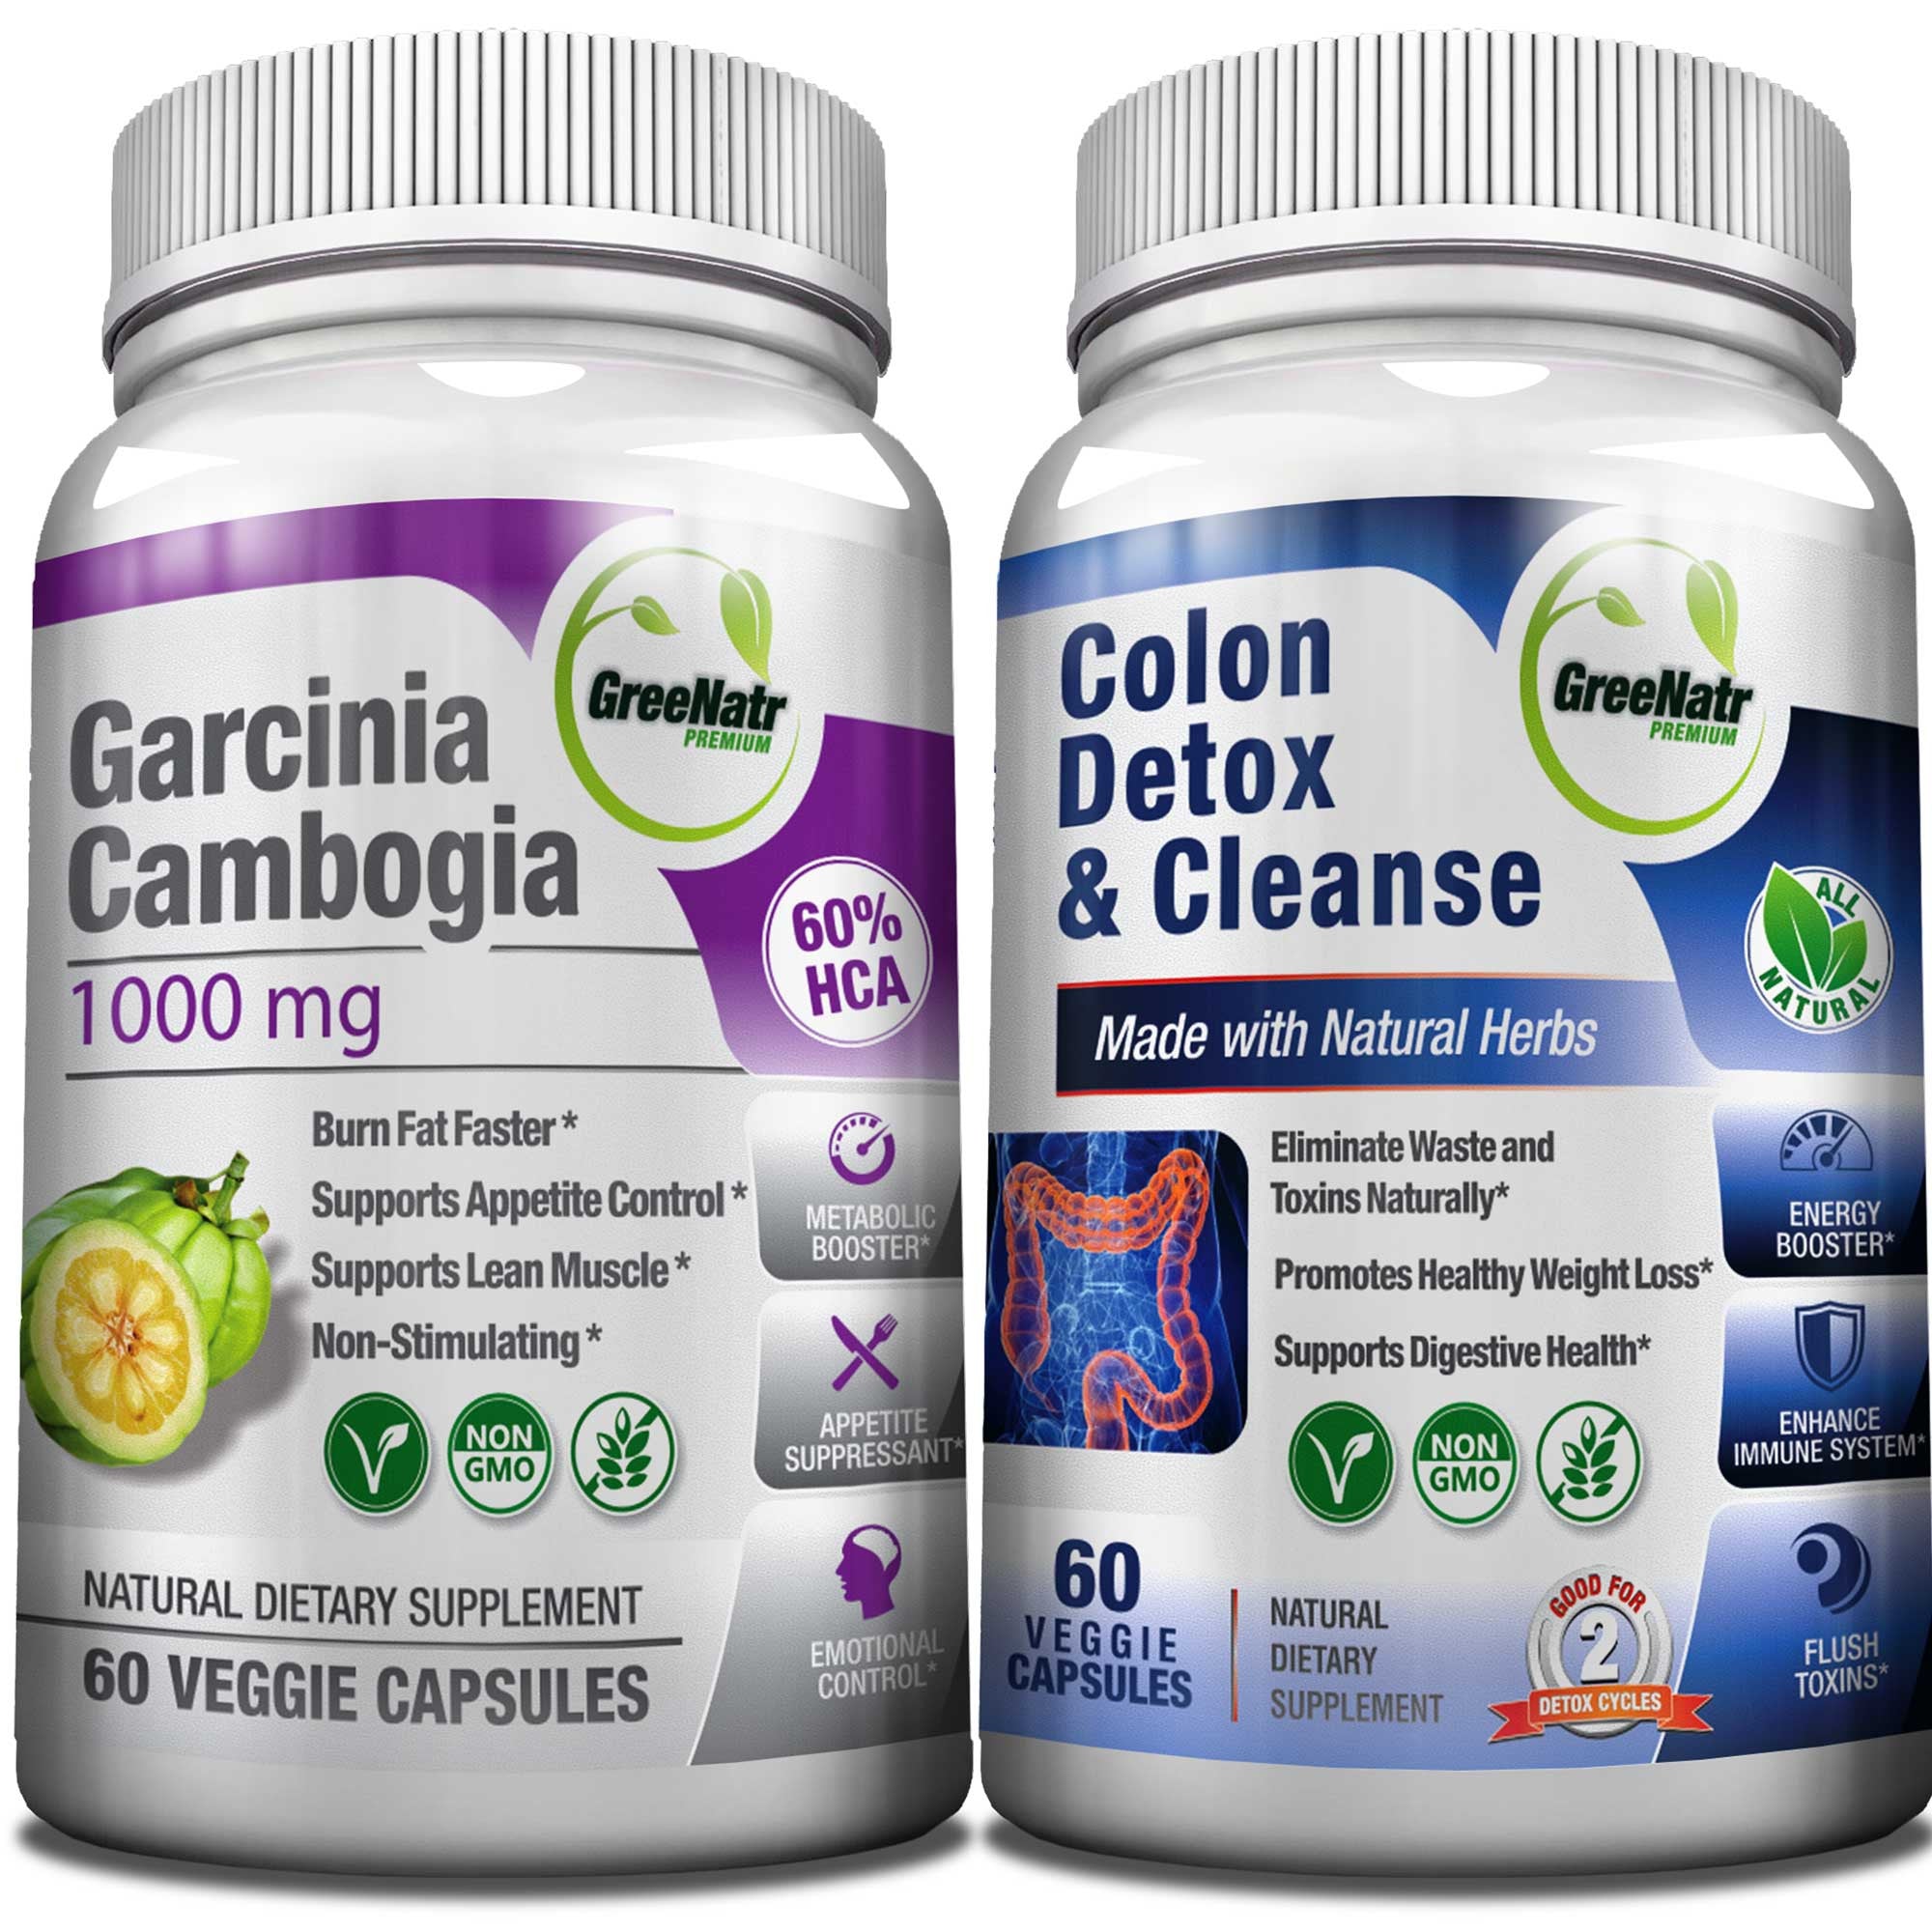 GreeNatr Garcinia Cambogia + Colon Detox Bundle